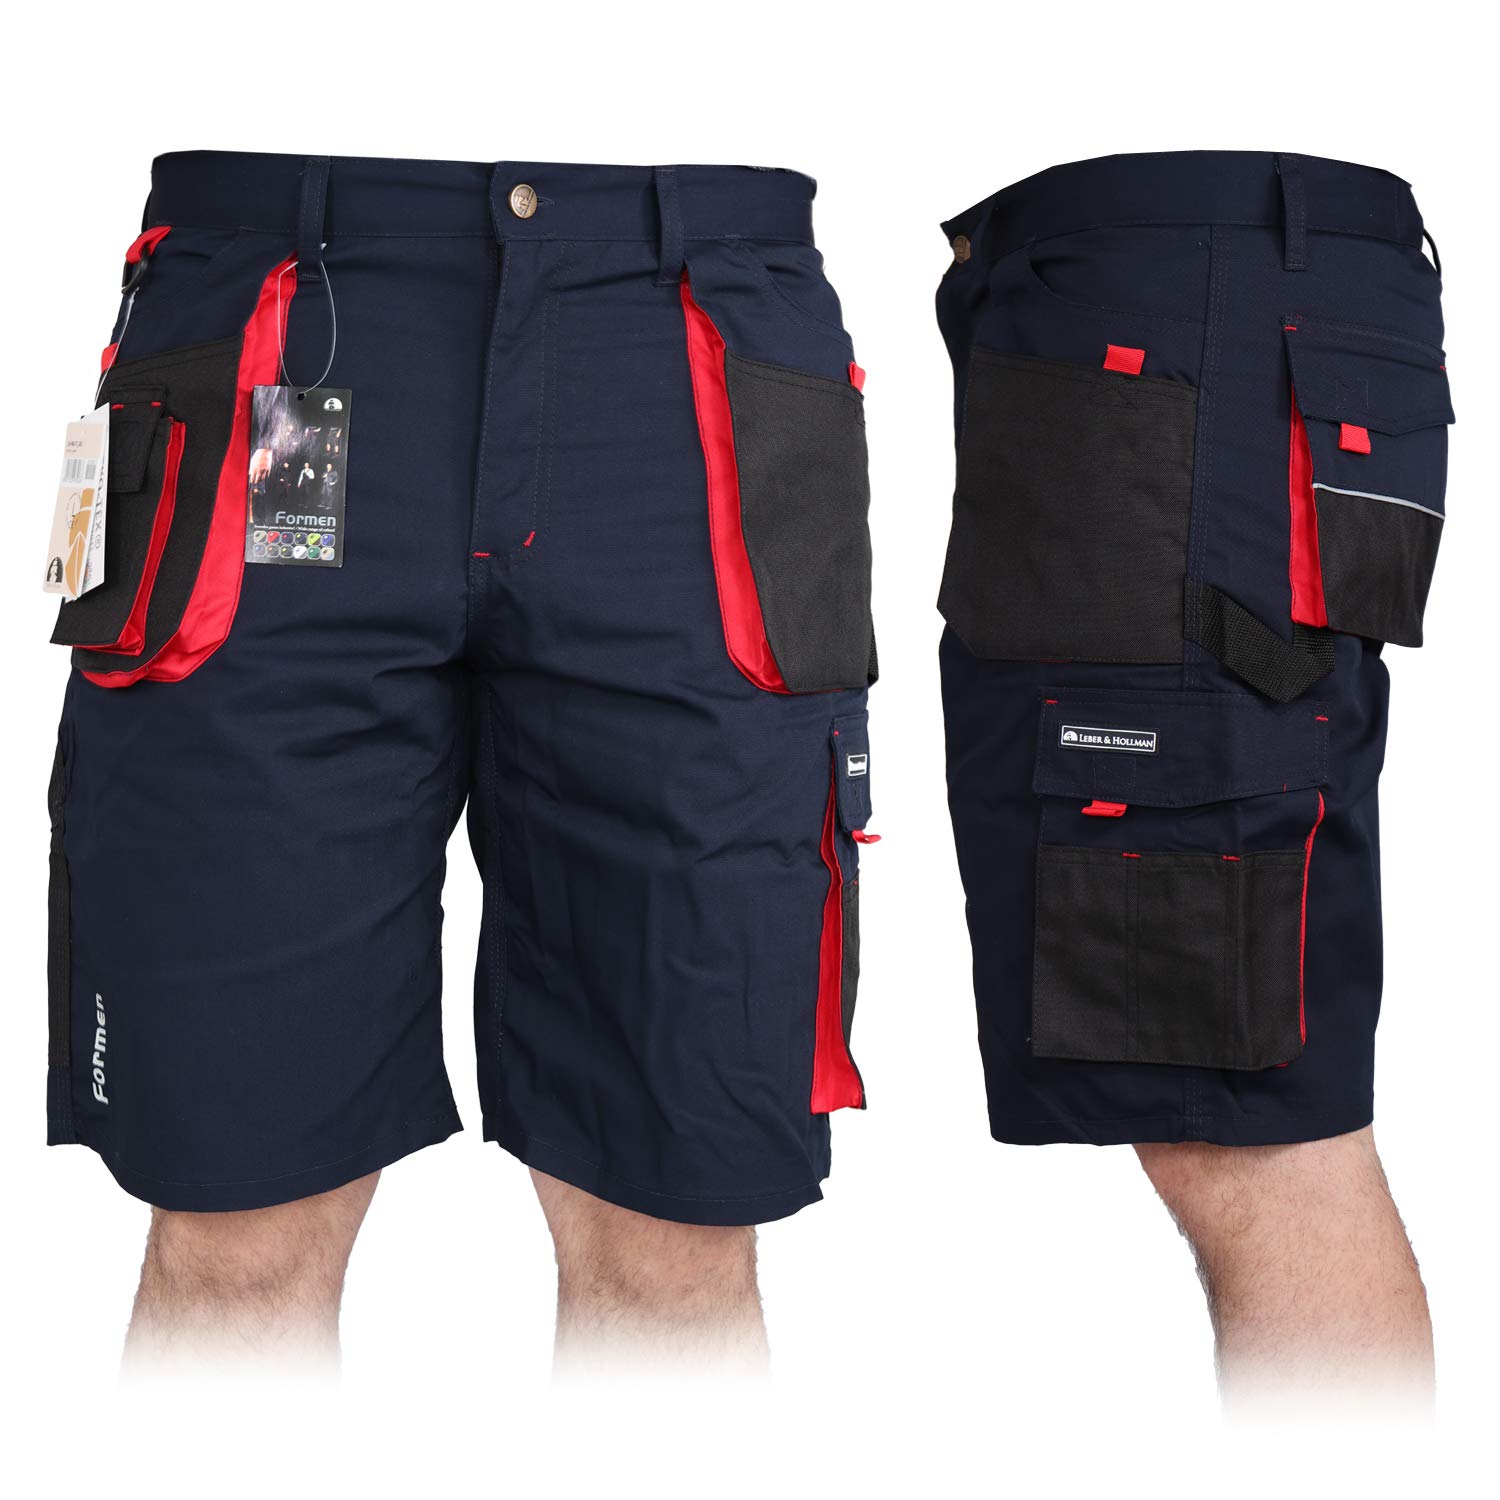 Kurze Arbeitshose für Herren, Bermuda Shorts Sommerhose Sicherheitshose Schutzhose Arbeitsbekleidung Sommer, Blau-Schwarz-Rot, S